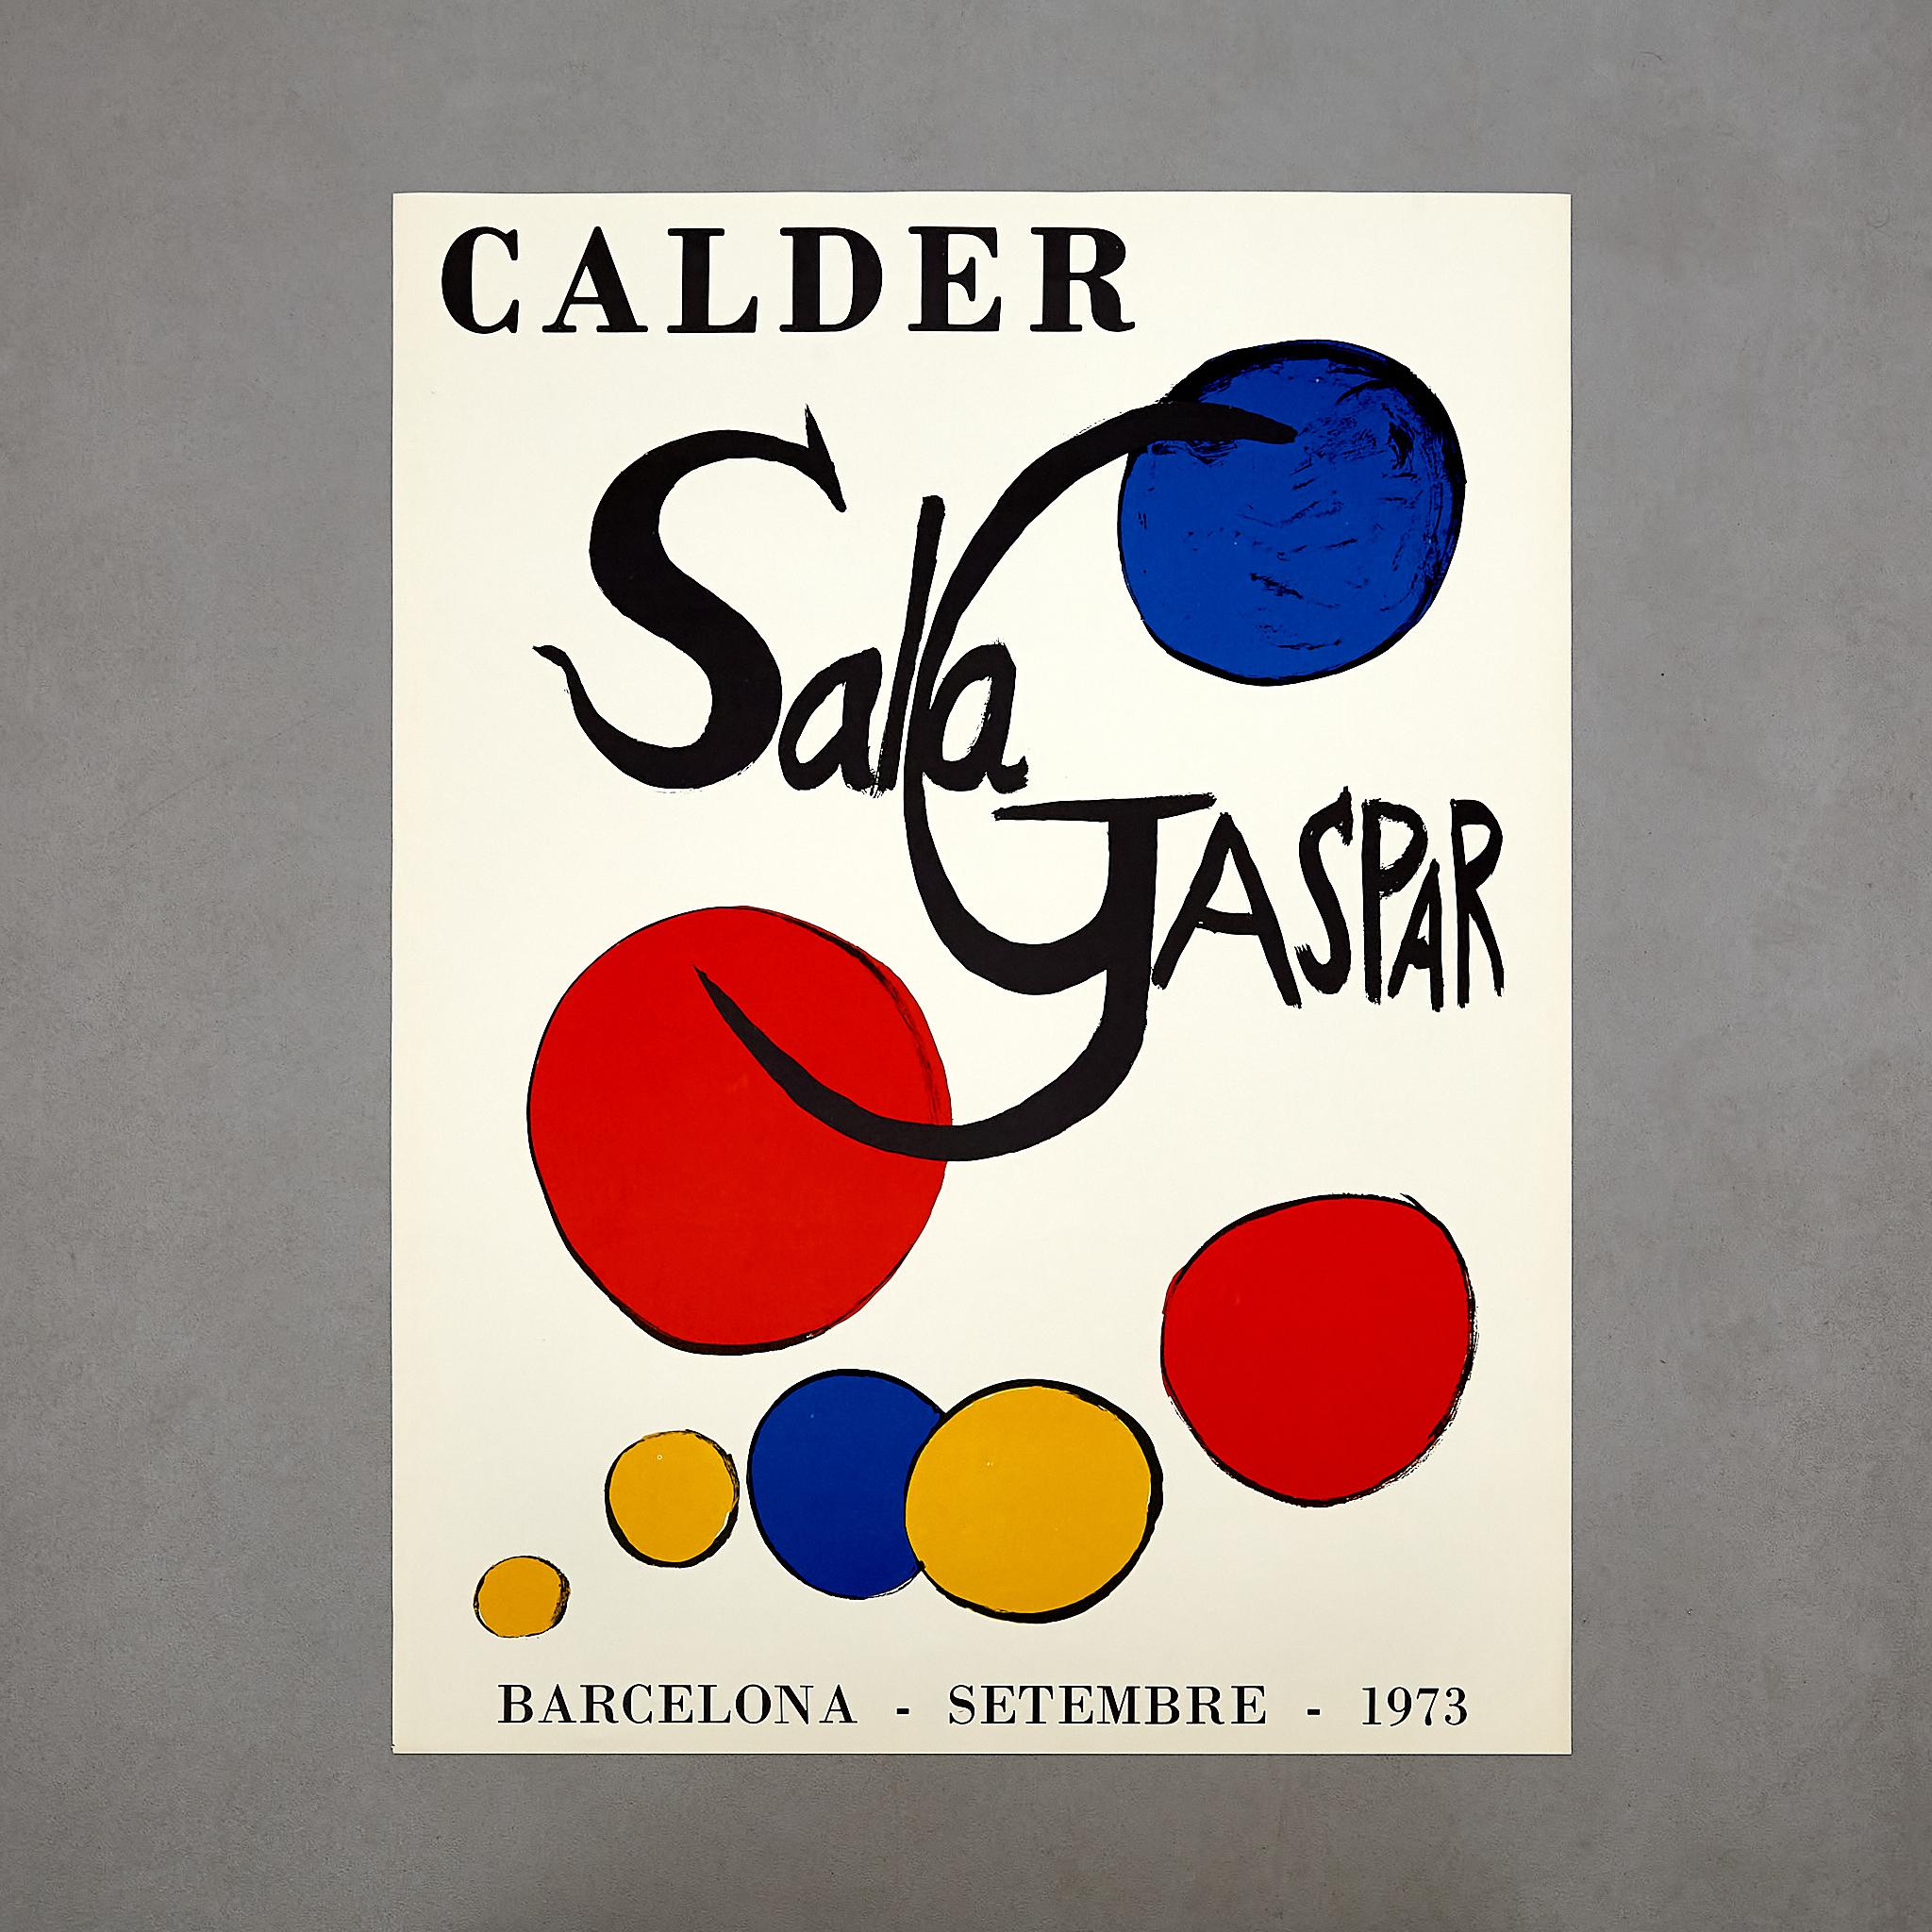 Entrez dans un royaume d'allure artistique avec cette trouvaille exceptionnelle - une affiche historique originale d'Alexander Calder, exposée de manière proéminente à la célèbre Sala Gaspar à Barcelone pendant le captivant mois de septembre 1973.